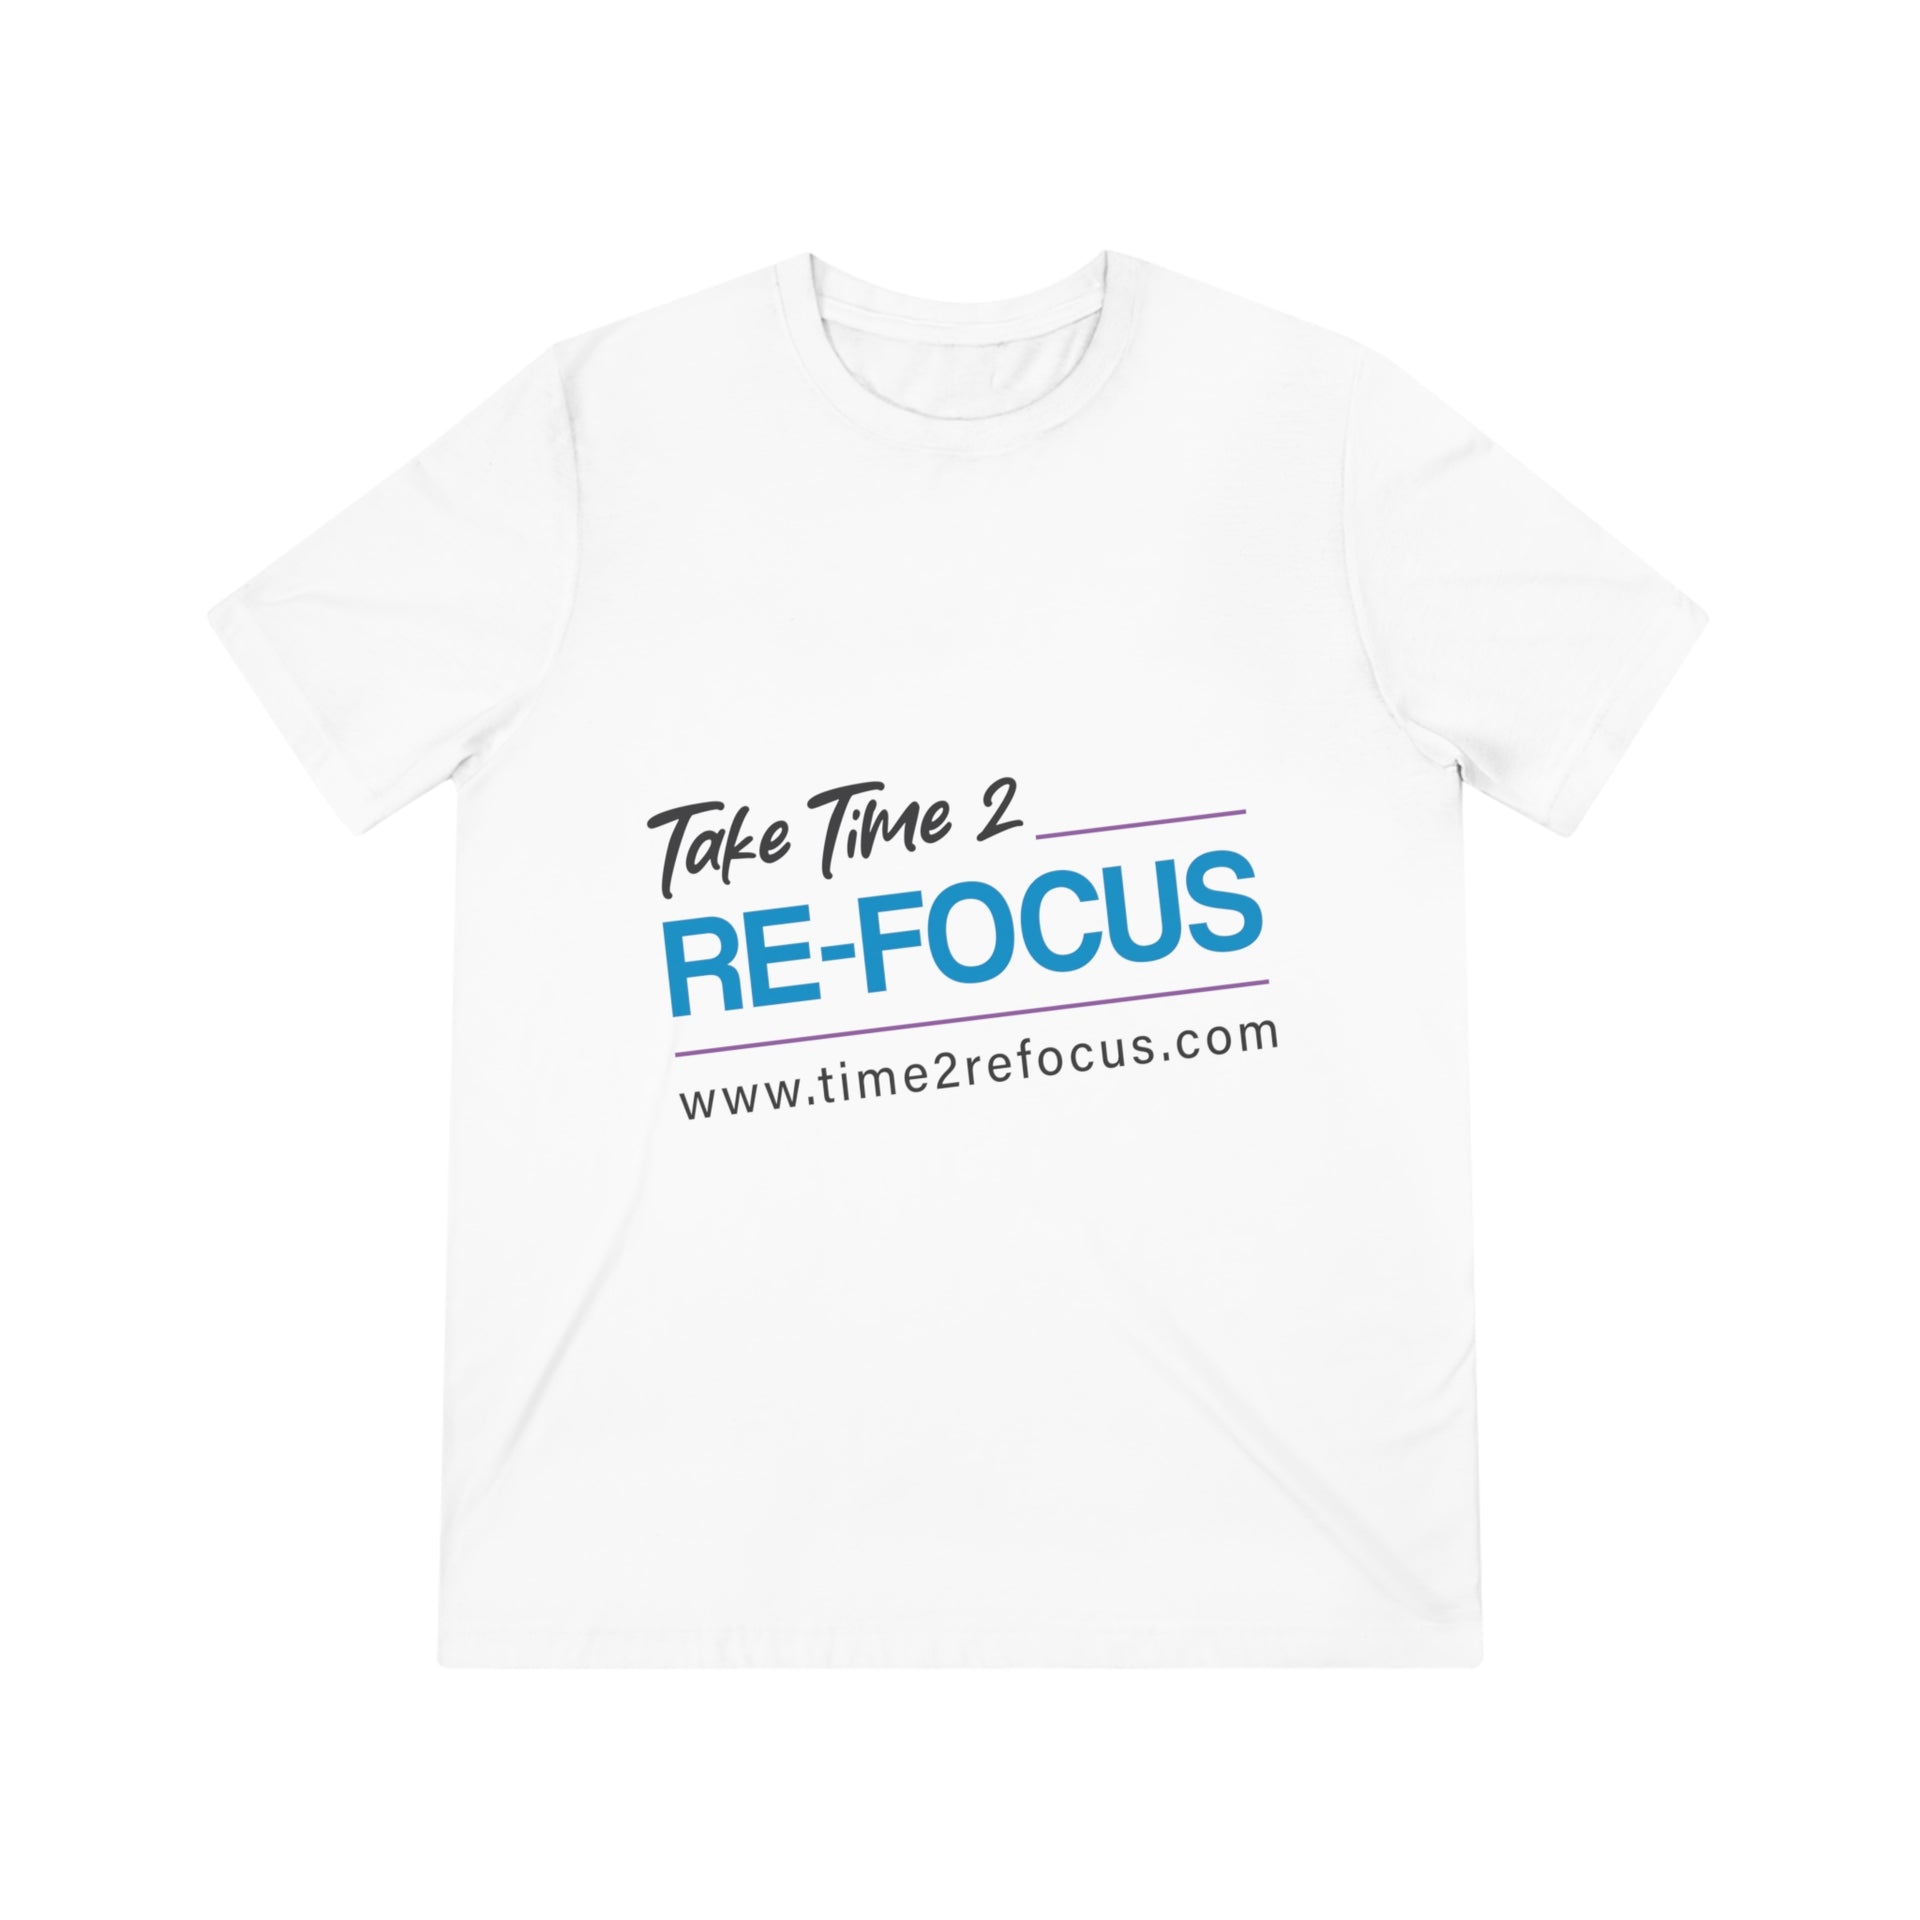 Take Time 2 RE-FOCUS T-Shirt